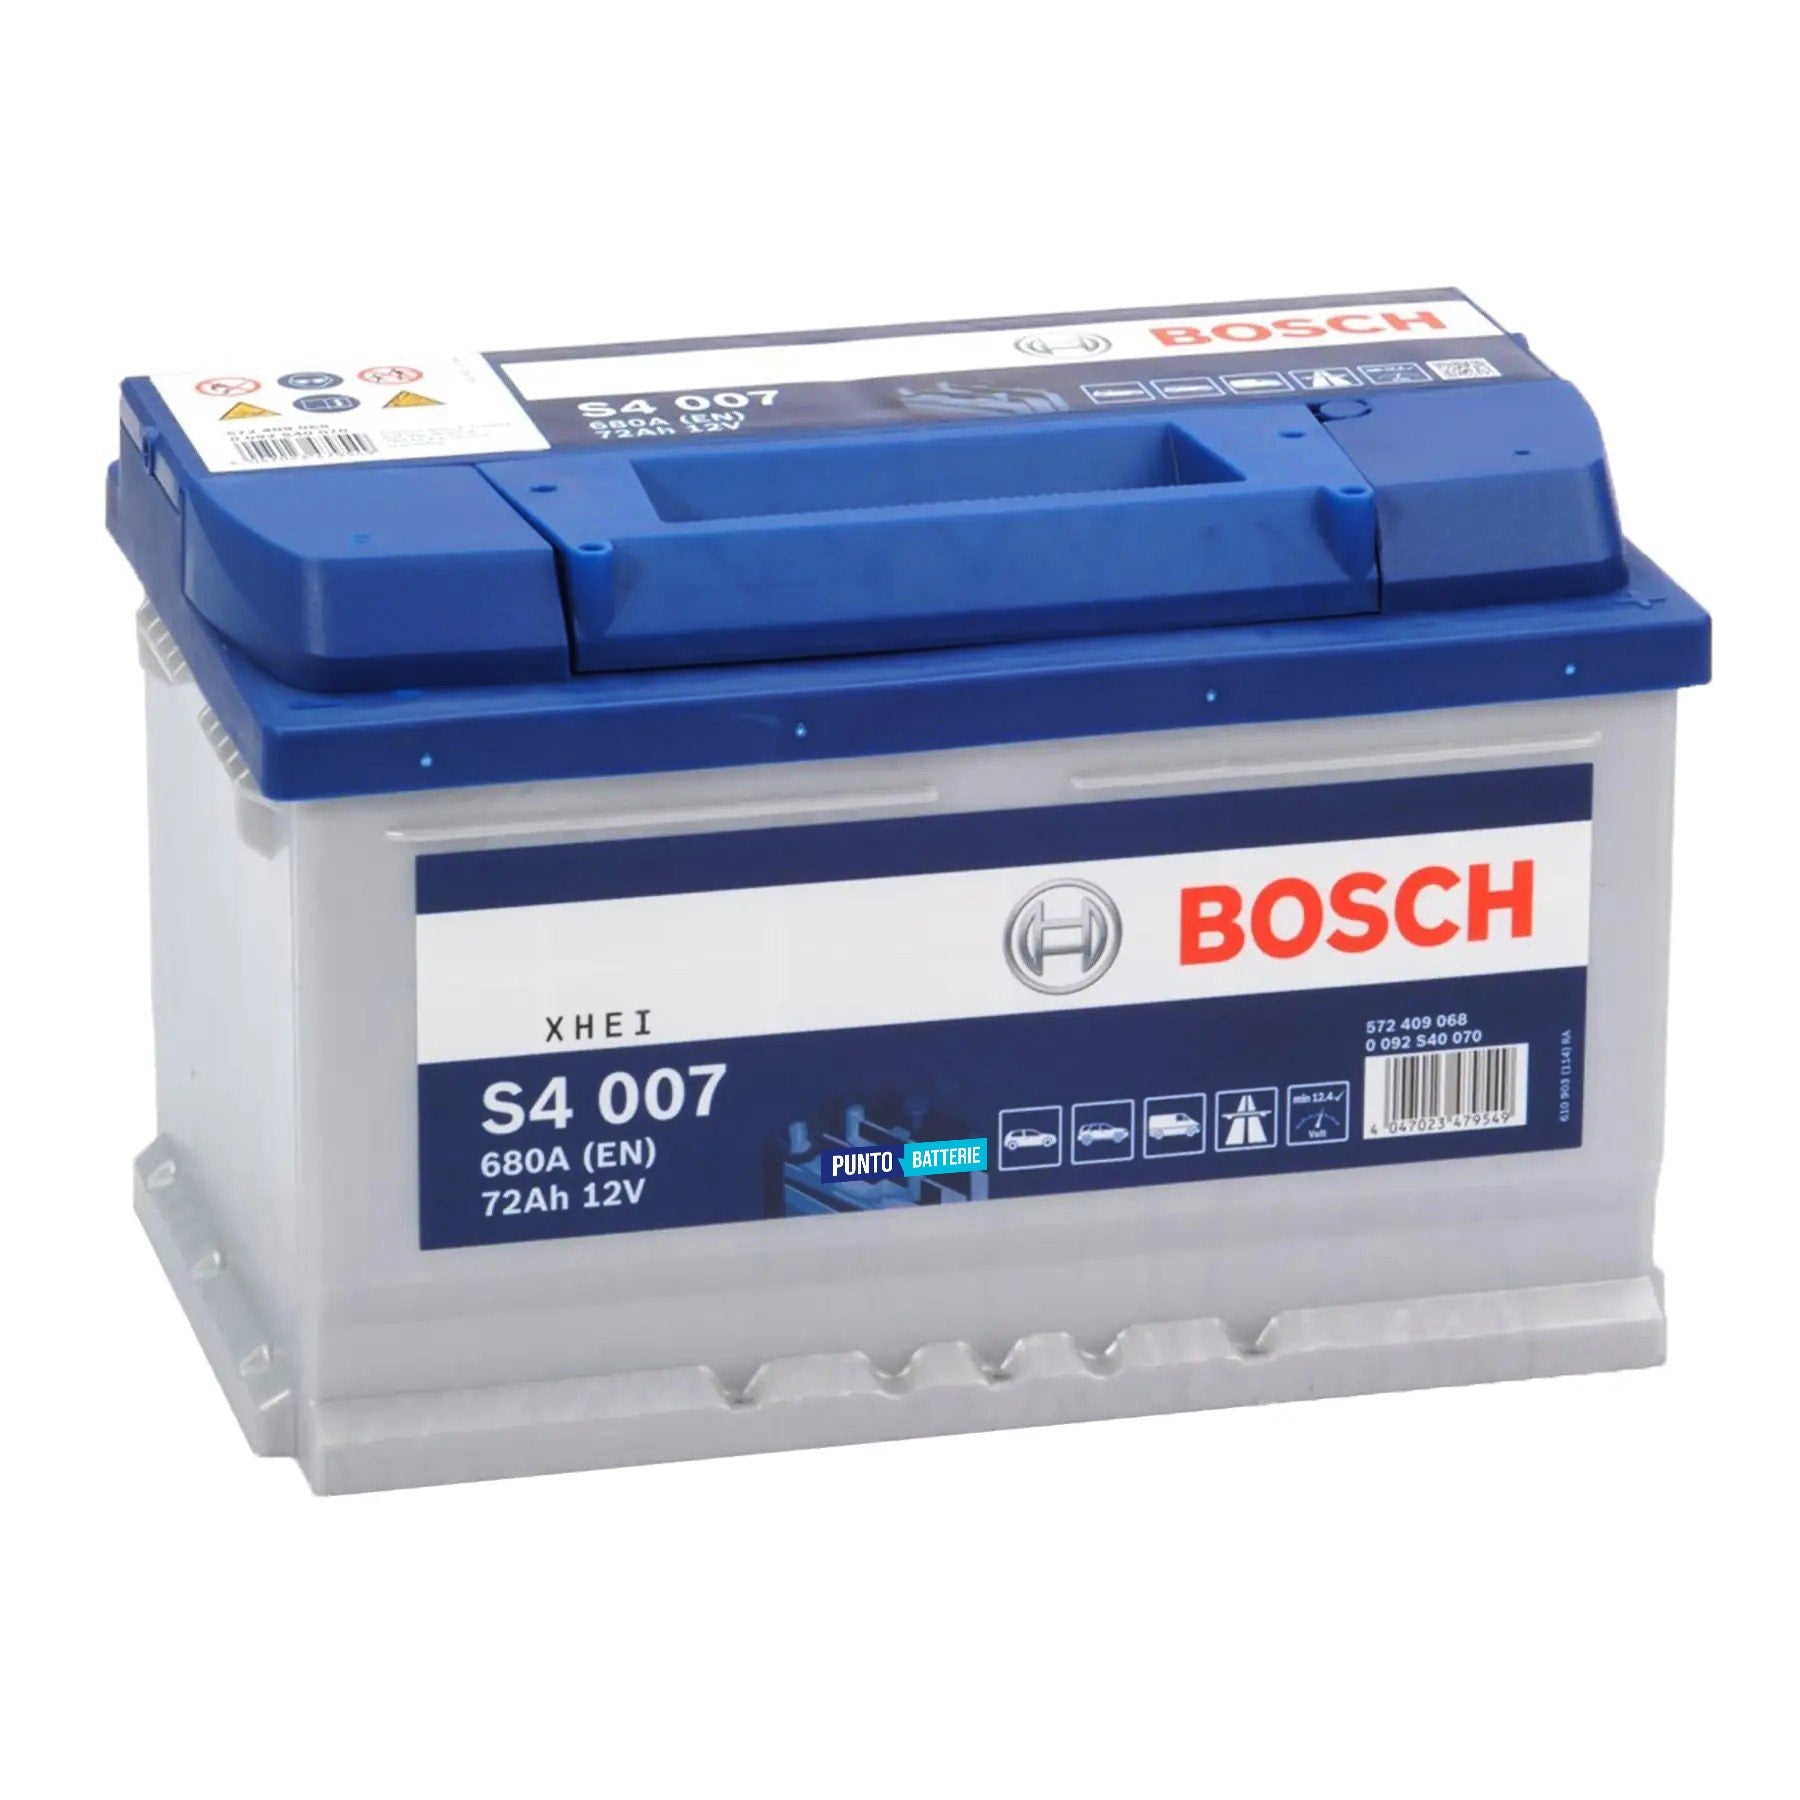 Batteria originale Bosch S4 S4 007, dimensioni 278 x 175 x 175, polo positivo a destra, 12 volt, 72 amperora, 680 ampere. Batteria per auto e veicoli leggeri.